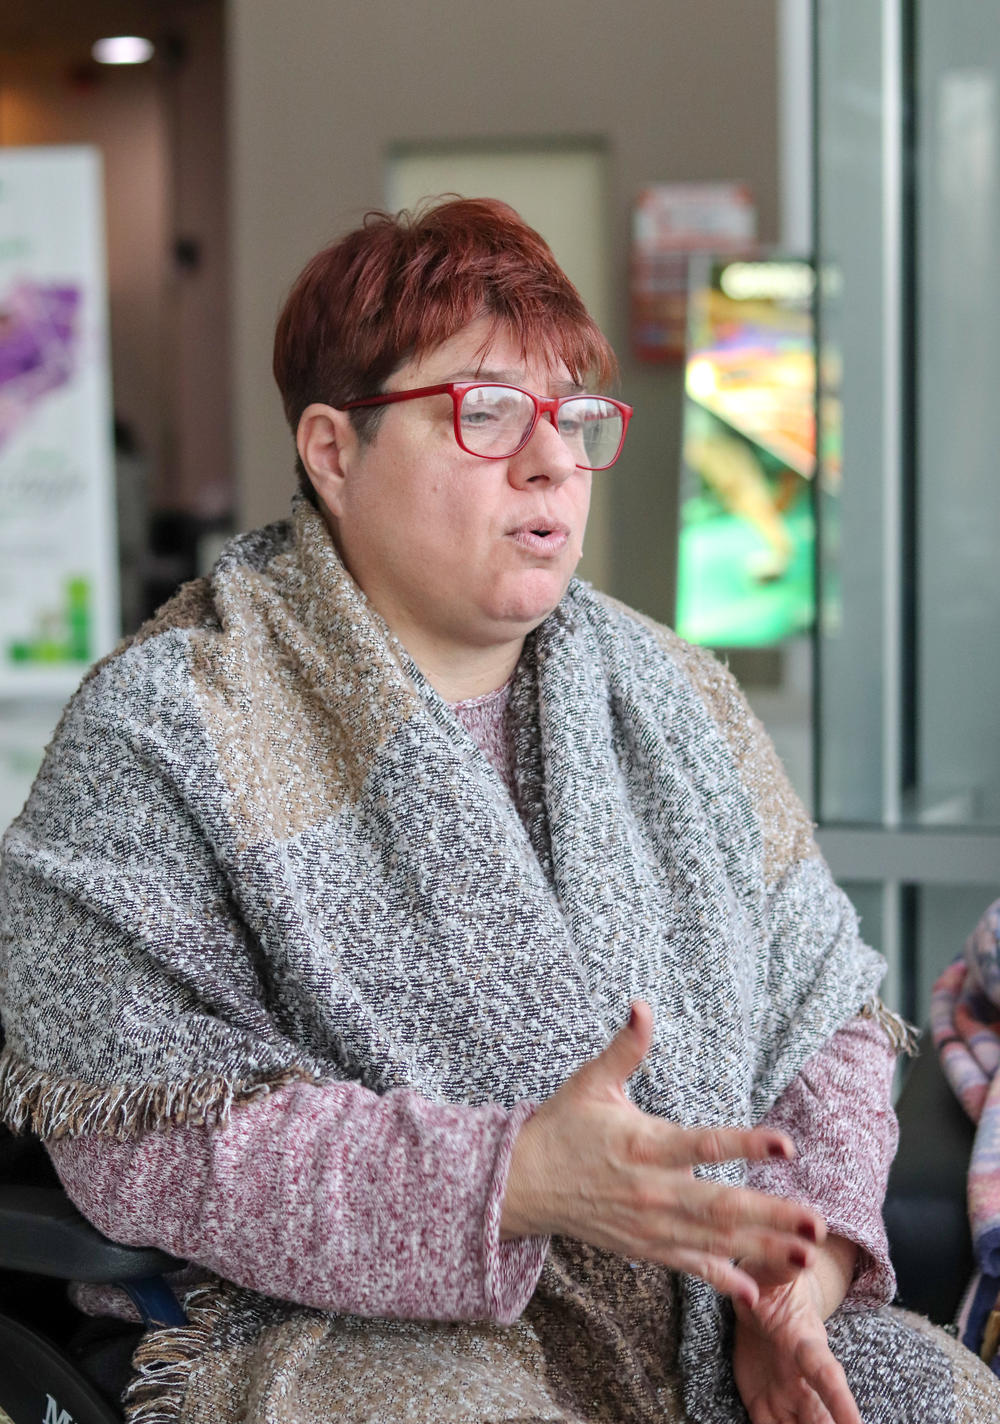 Tatjana radi na osnaživanju osoba sa invaliditetom, ali i sa ostalim osobama koje su iz marginalizovanih grupa 